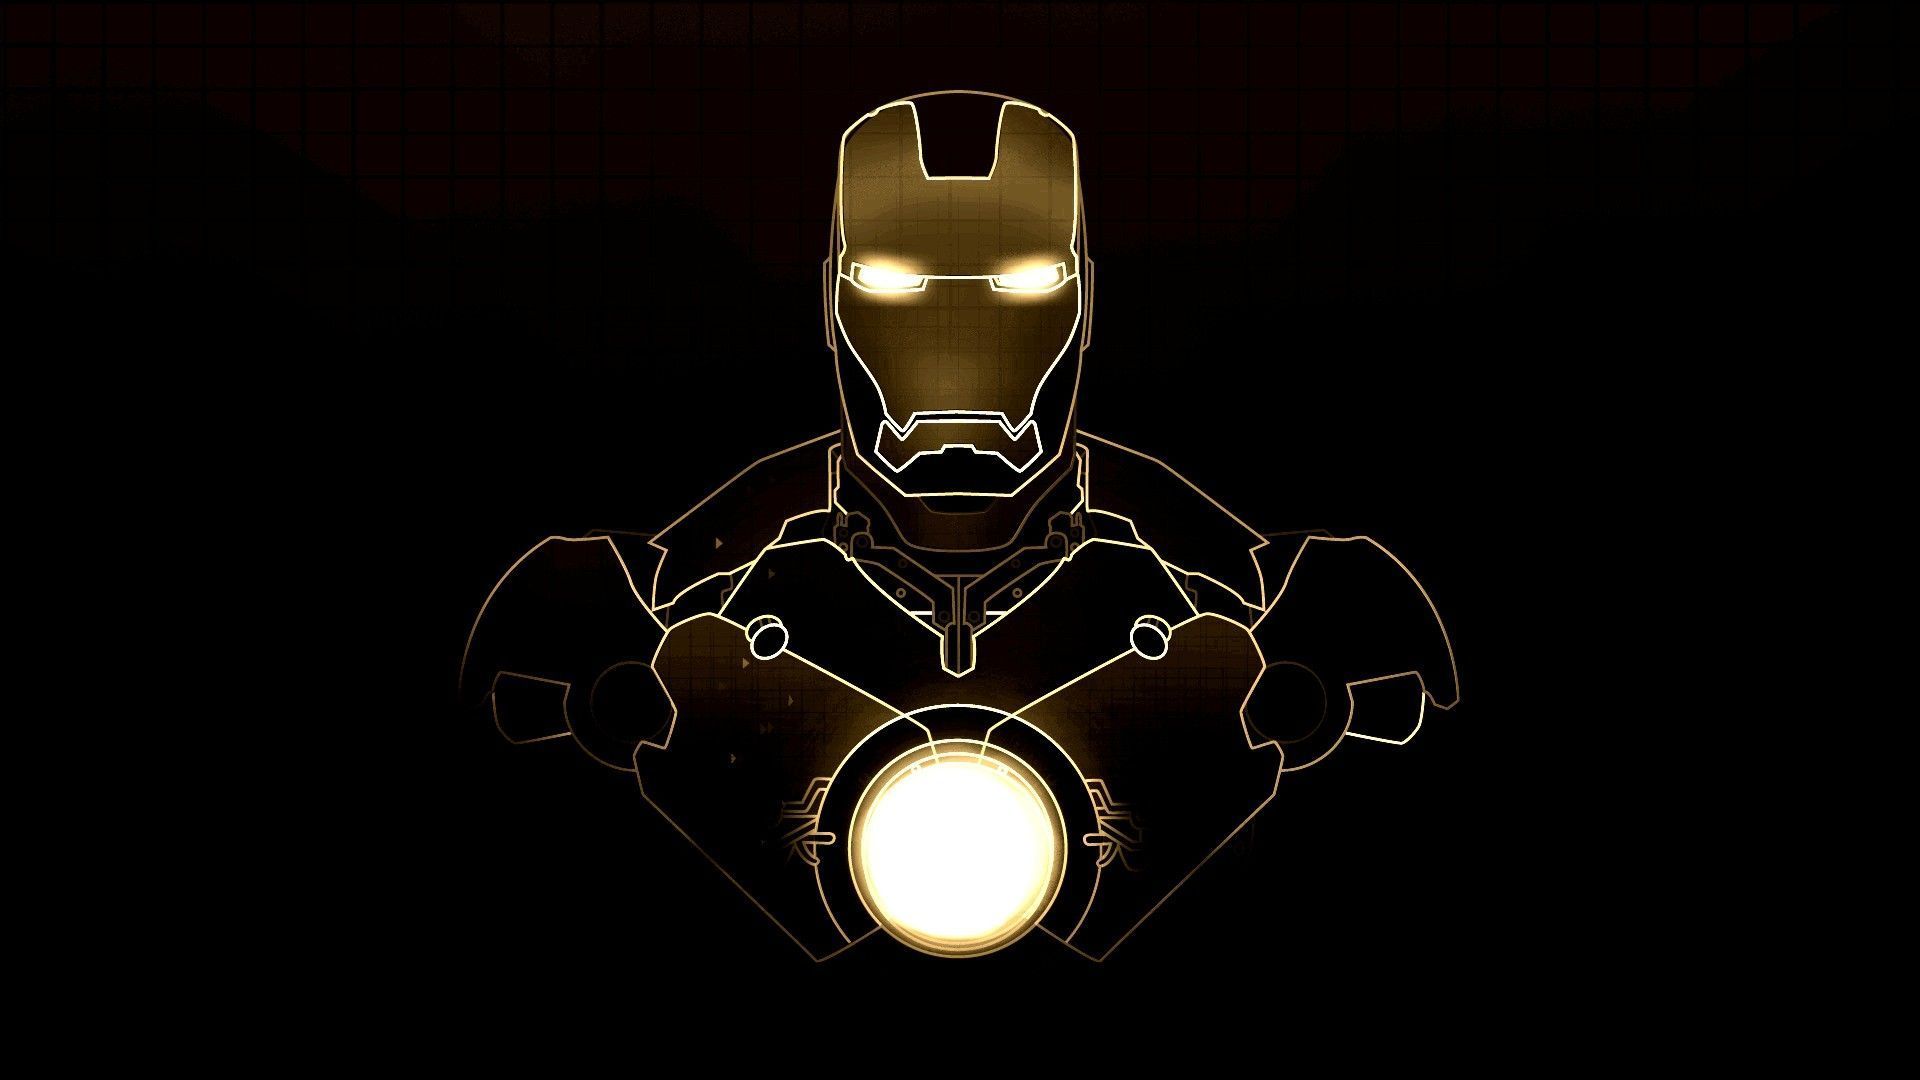 Iron Man HD Wallpaper 1920x1080 ID38044